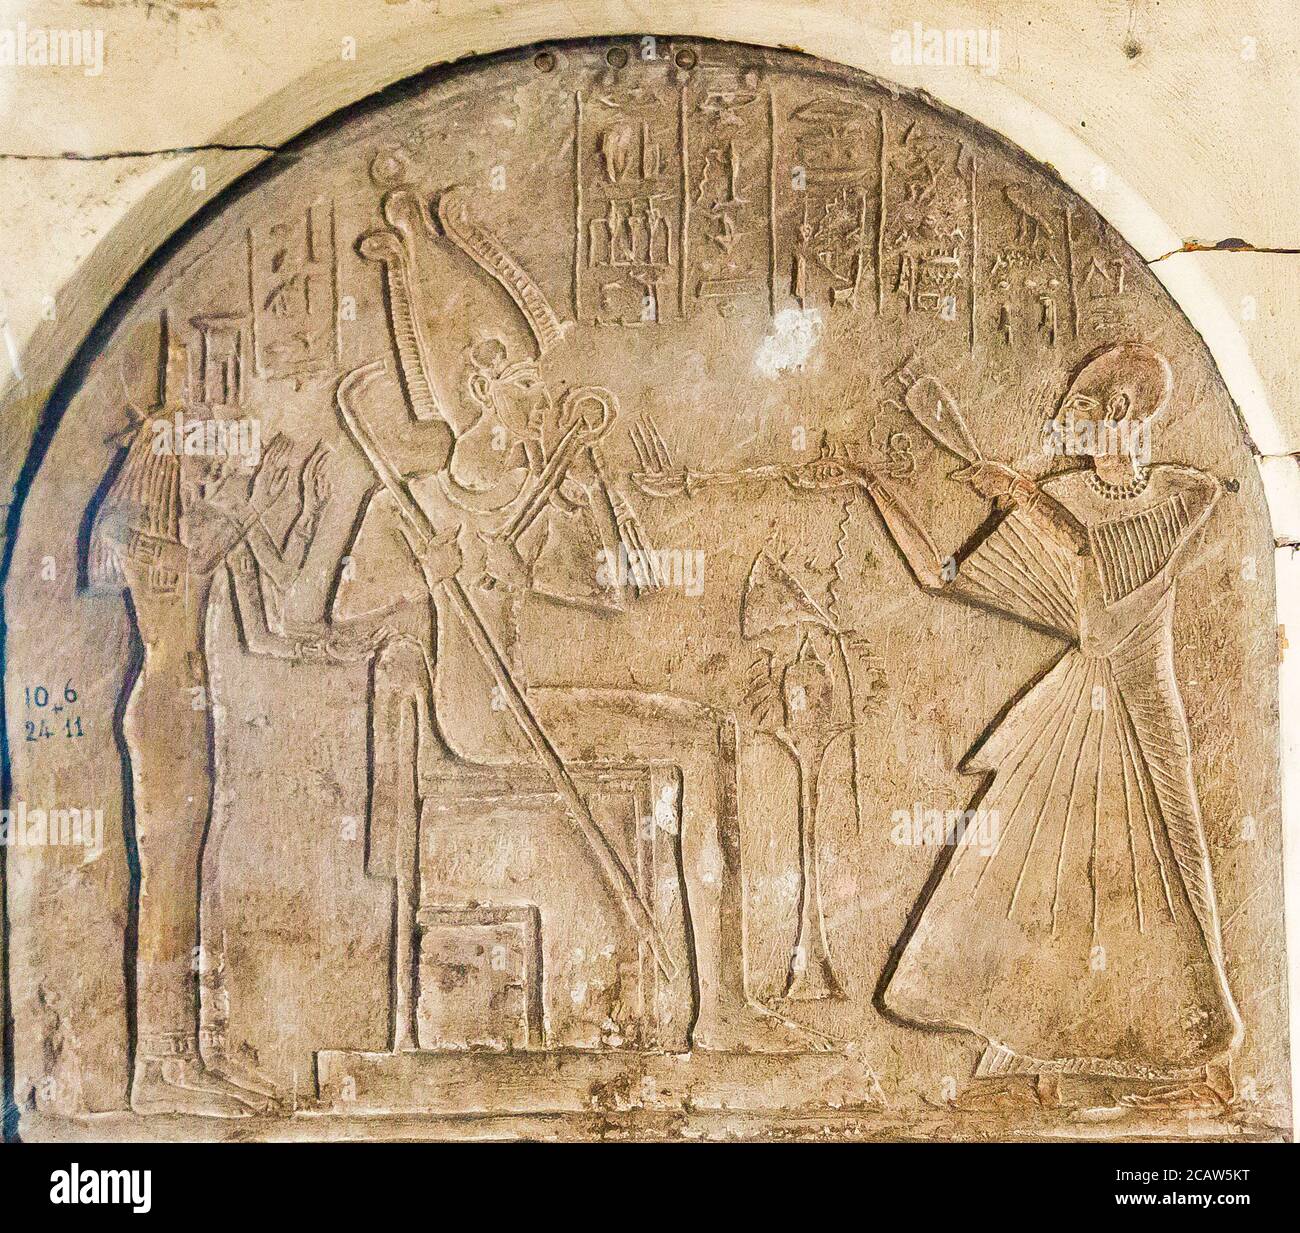 Le Caire, Musée égyptien, stela à plateau rond de tout, général du temple d'Amun. Tout est censurant et librant avant Osiris, Isis et Nephthys. Banque D'Images